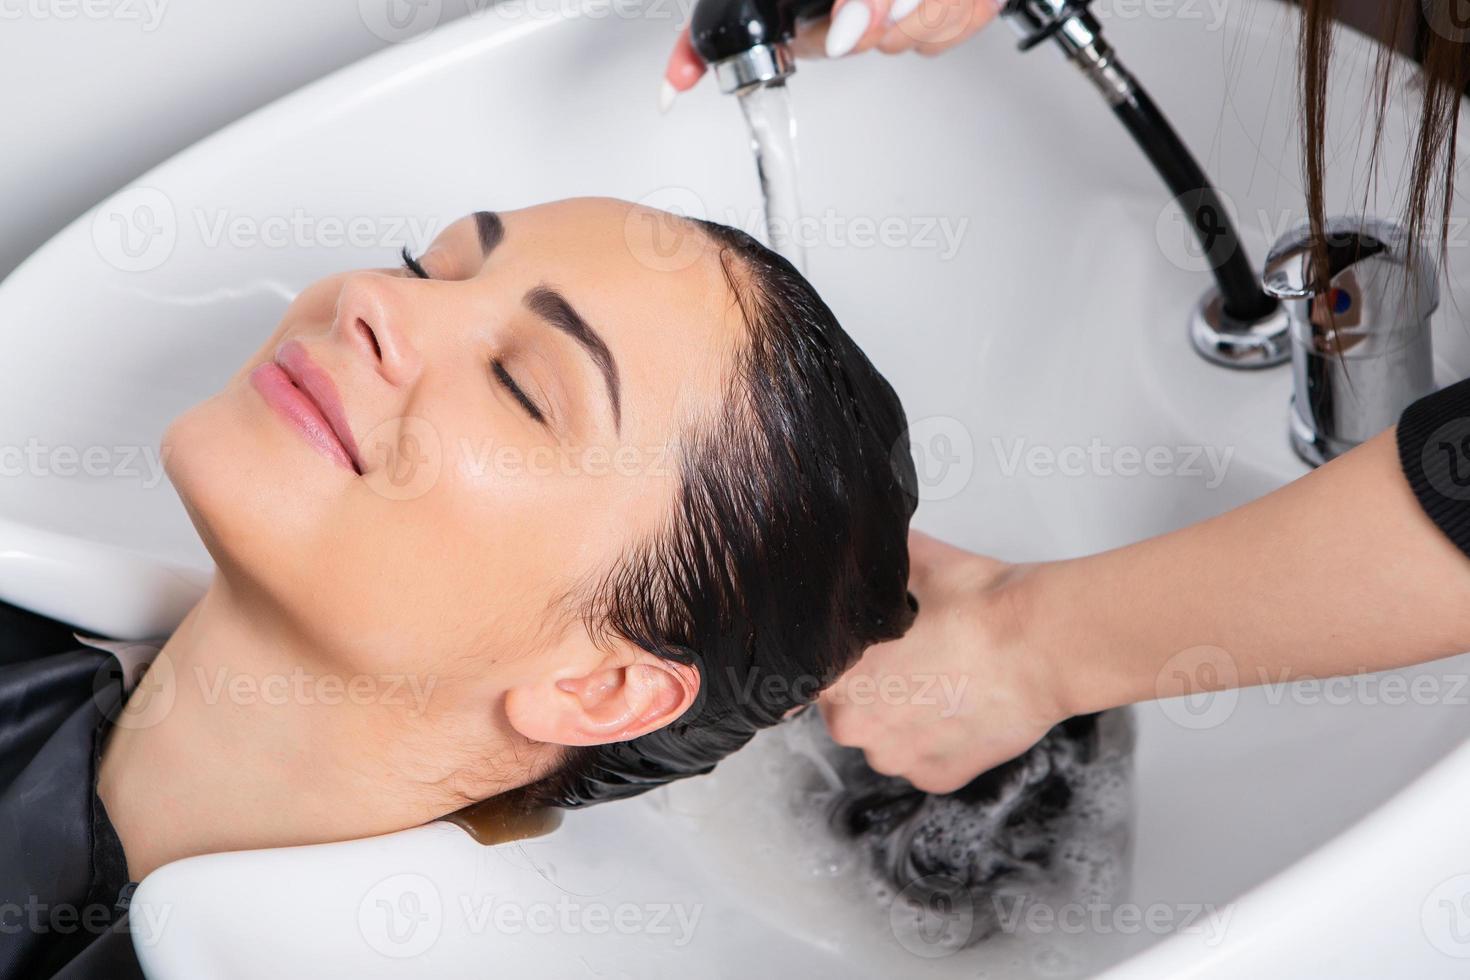 cabeleireiro profissional lavando cabelo de jovem no salão de beleza foto